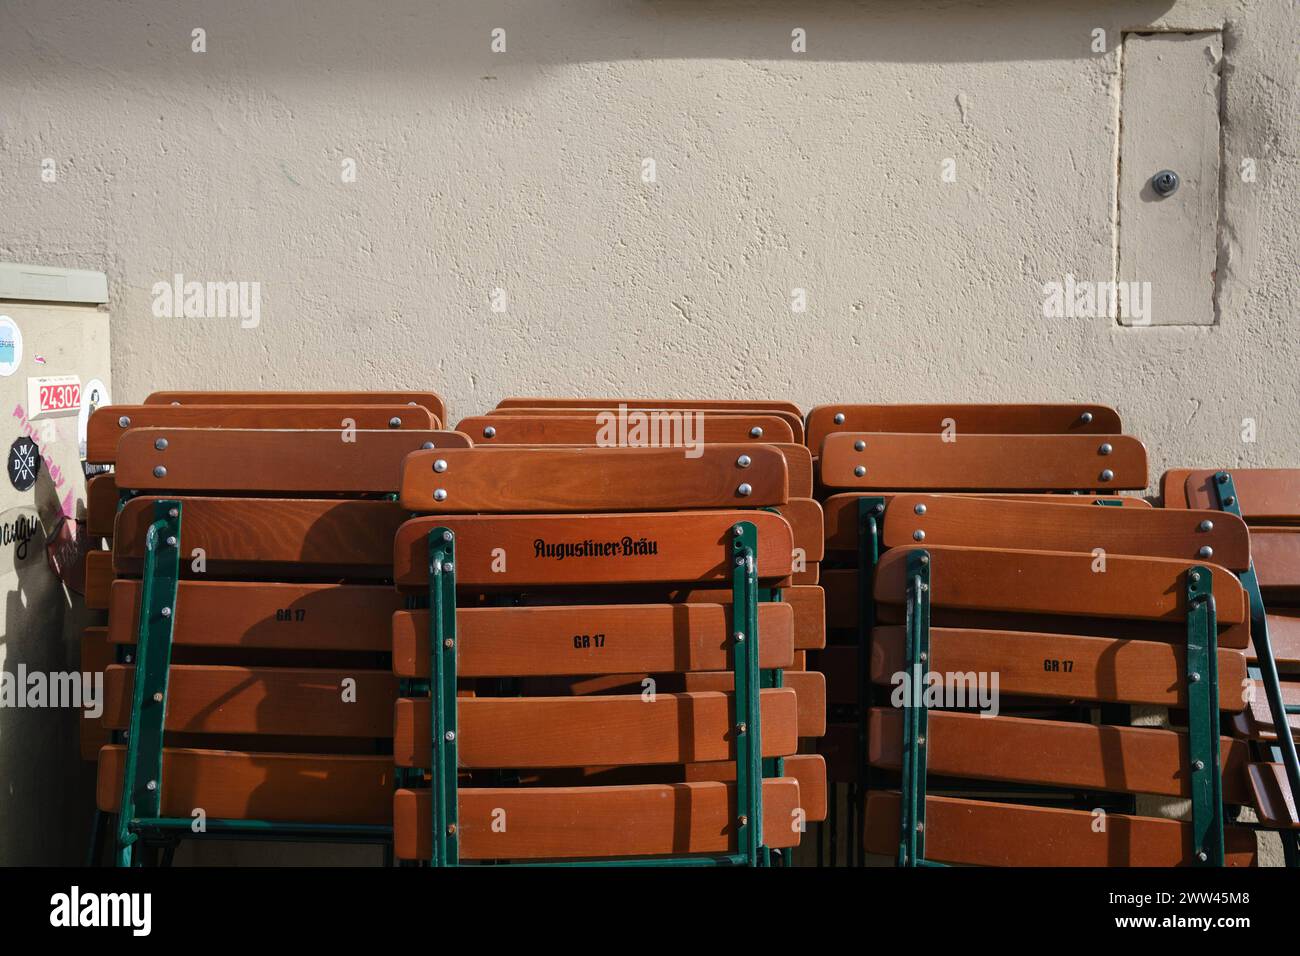 Biergartenstühle an Hauswand Zusammengeklappte Biergarten Stühle lehnen an Hauswand in der Frühlingssonne. Schriftzug Augustiner Bräu. München *** Bee Stock Photo